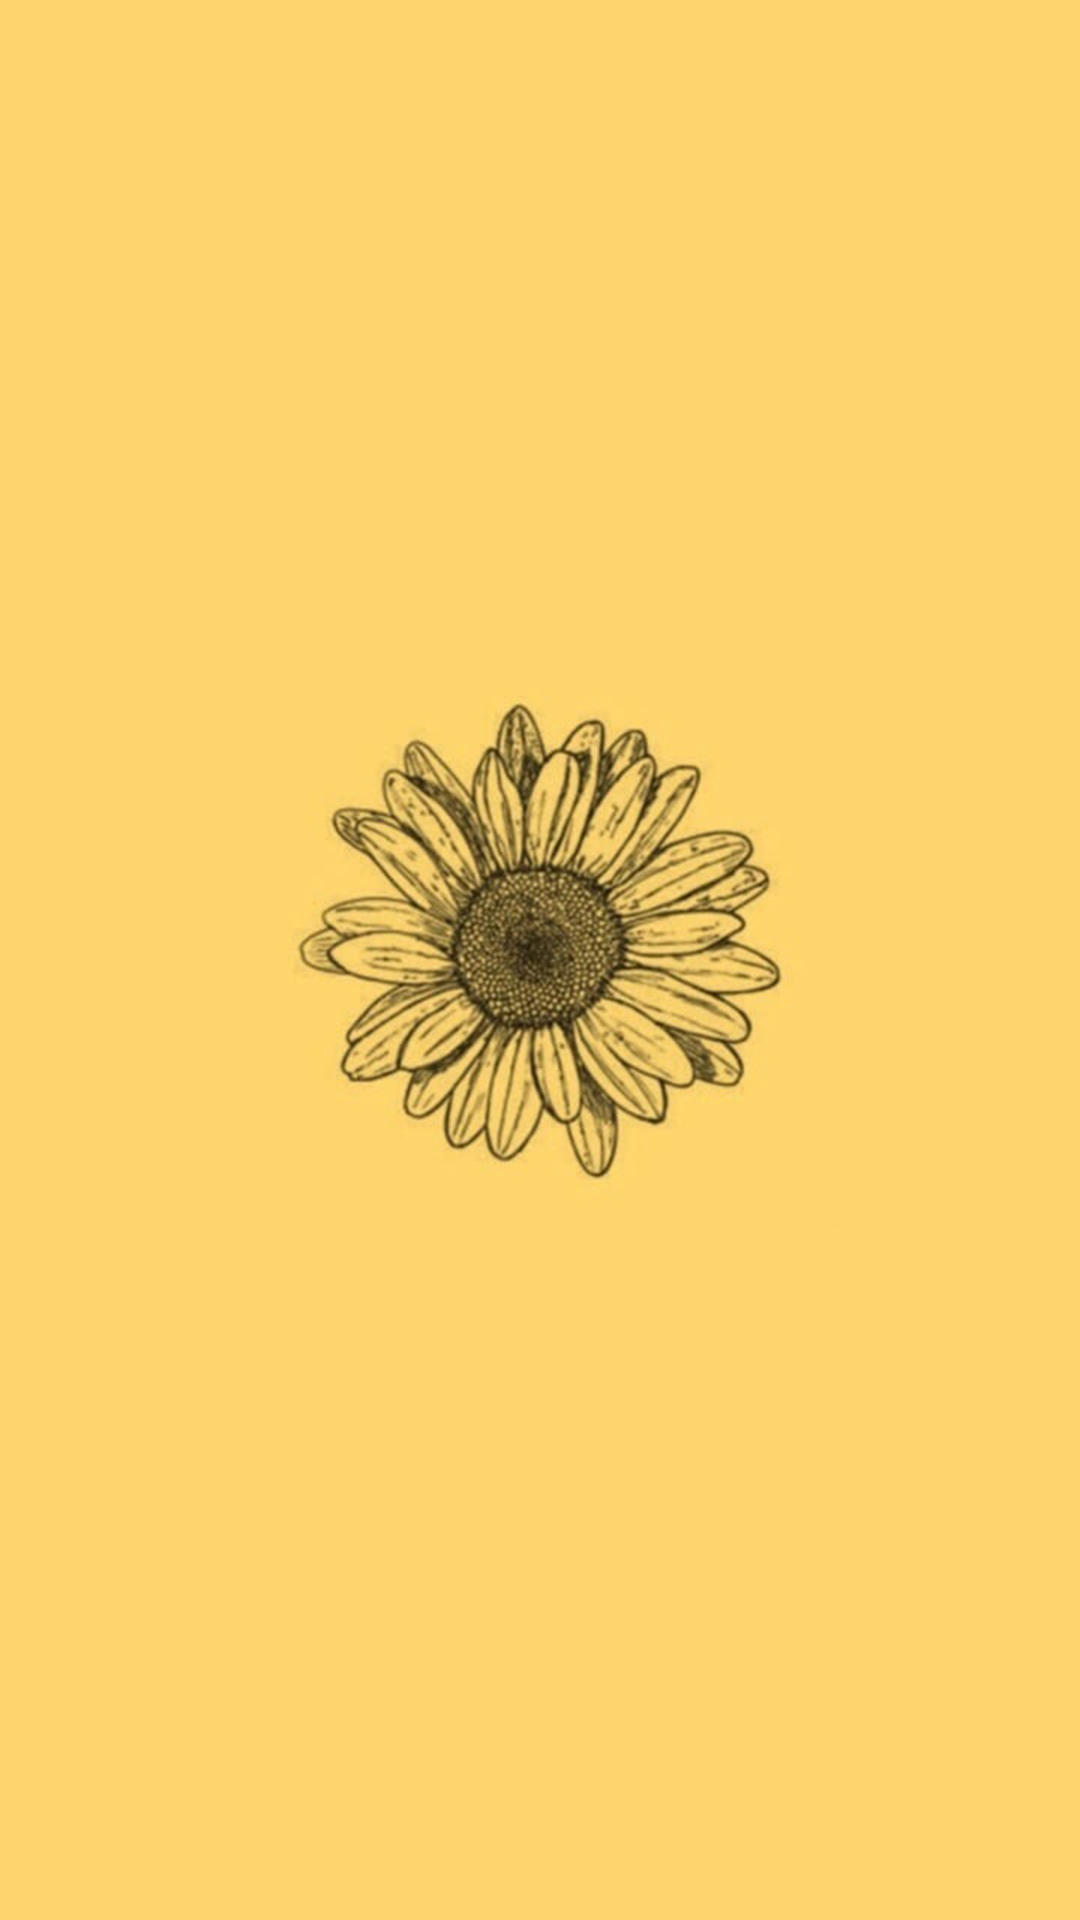 Sunflower Wallpaper Templates  Design Free Download  Templatenet